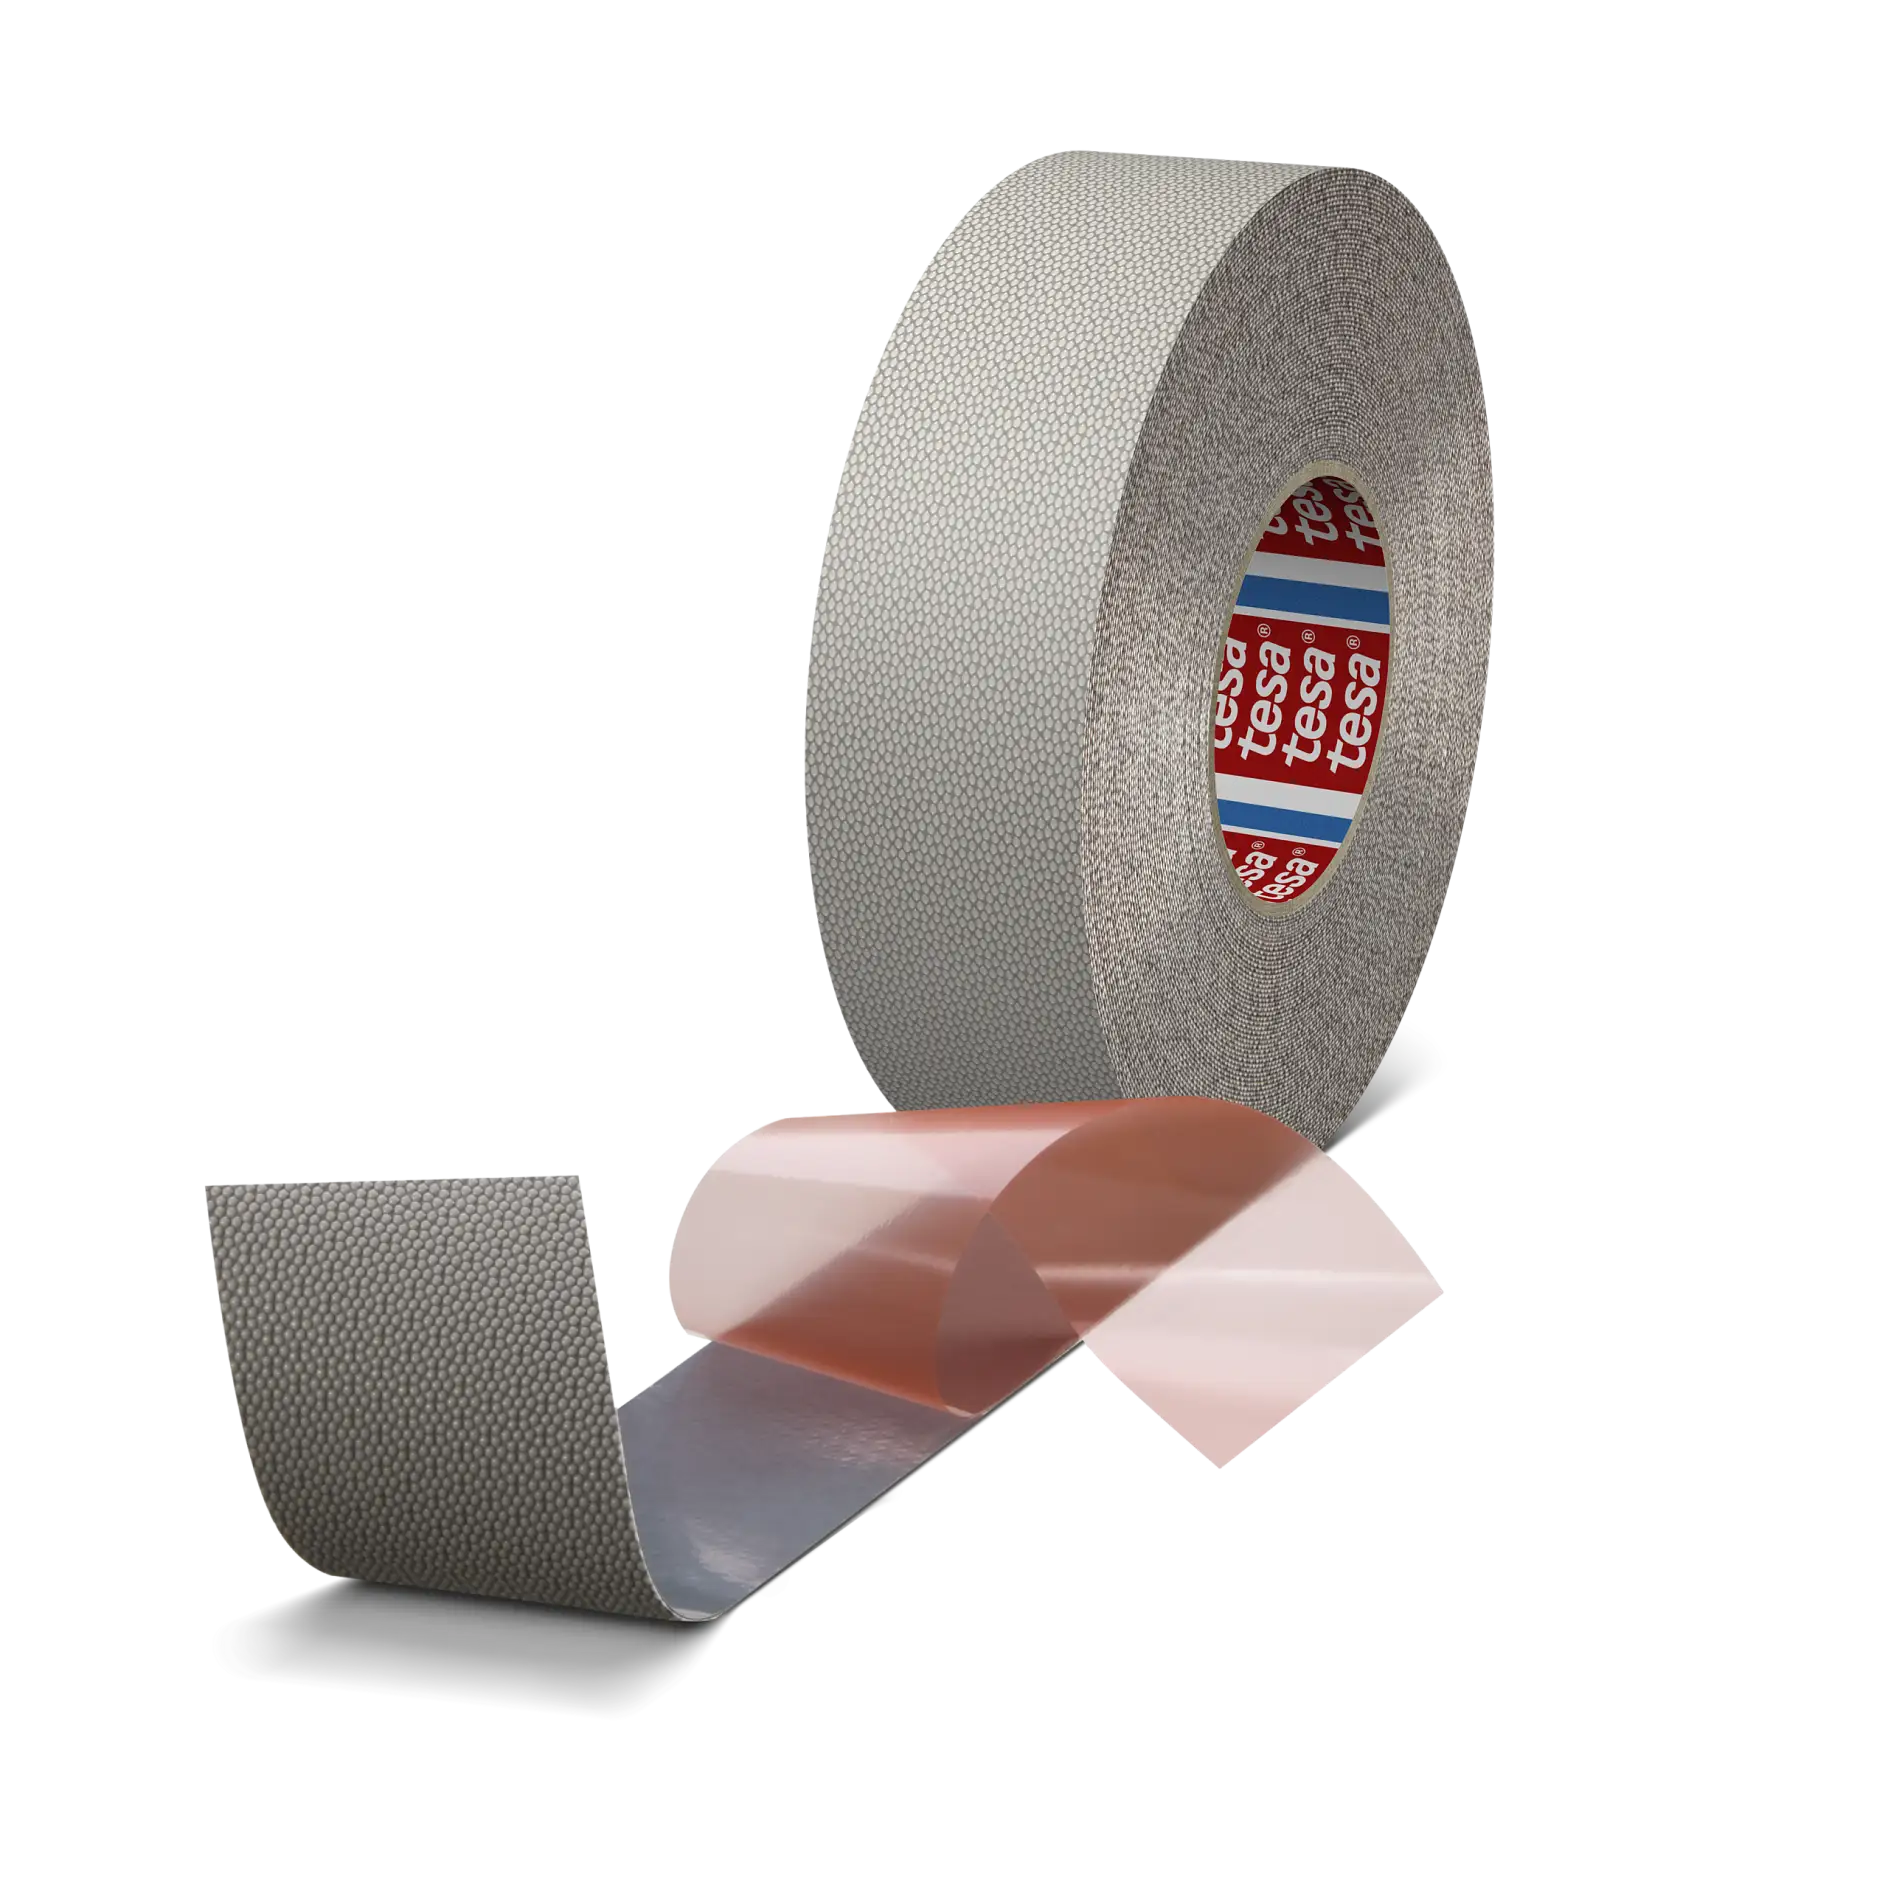 tesa-printersfriend-4863-pv3-silicone-roll-wrap-tape-gray-048630000003-pr